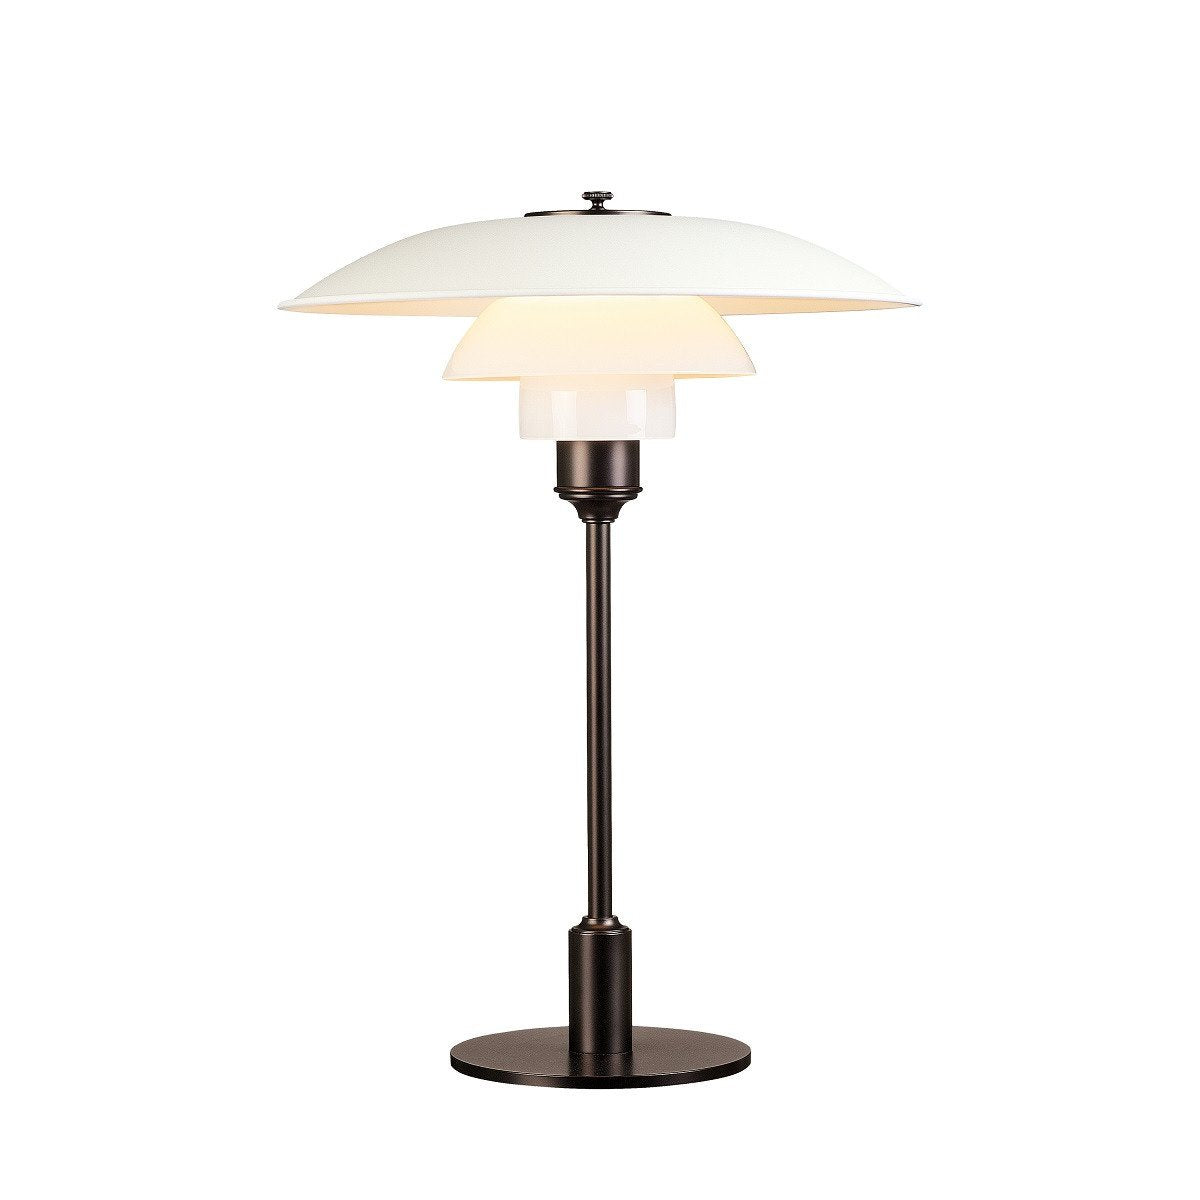 Louis Poulsen PH 3 1/2 2 1/2 lampe de table, blanc